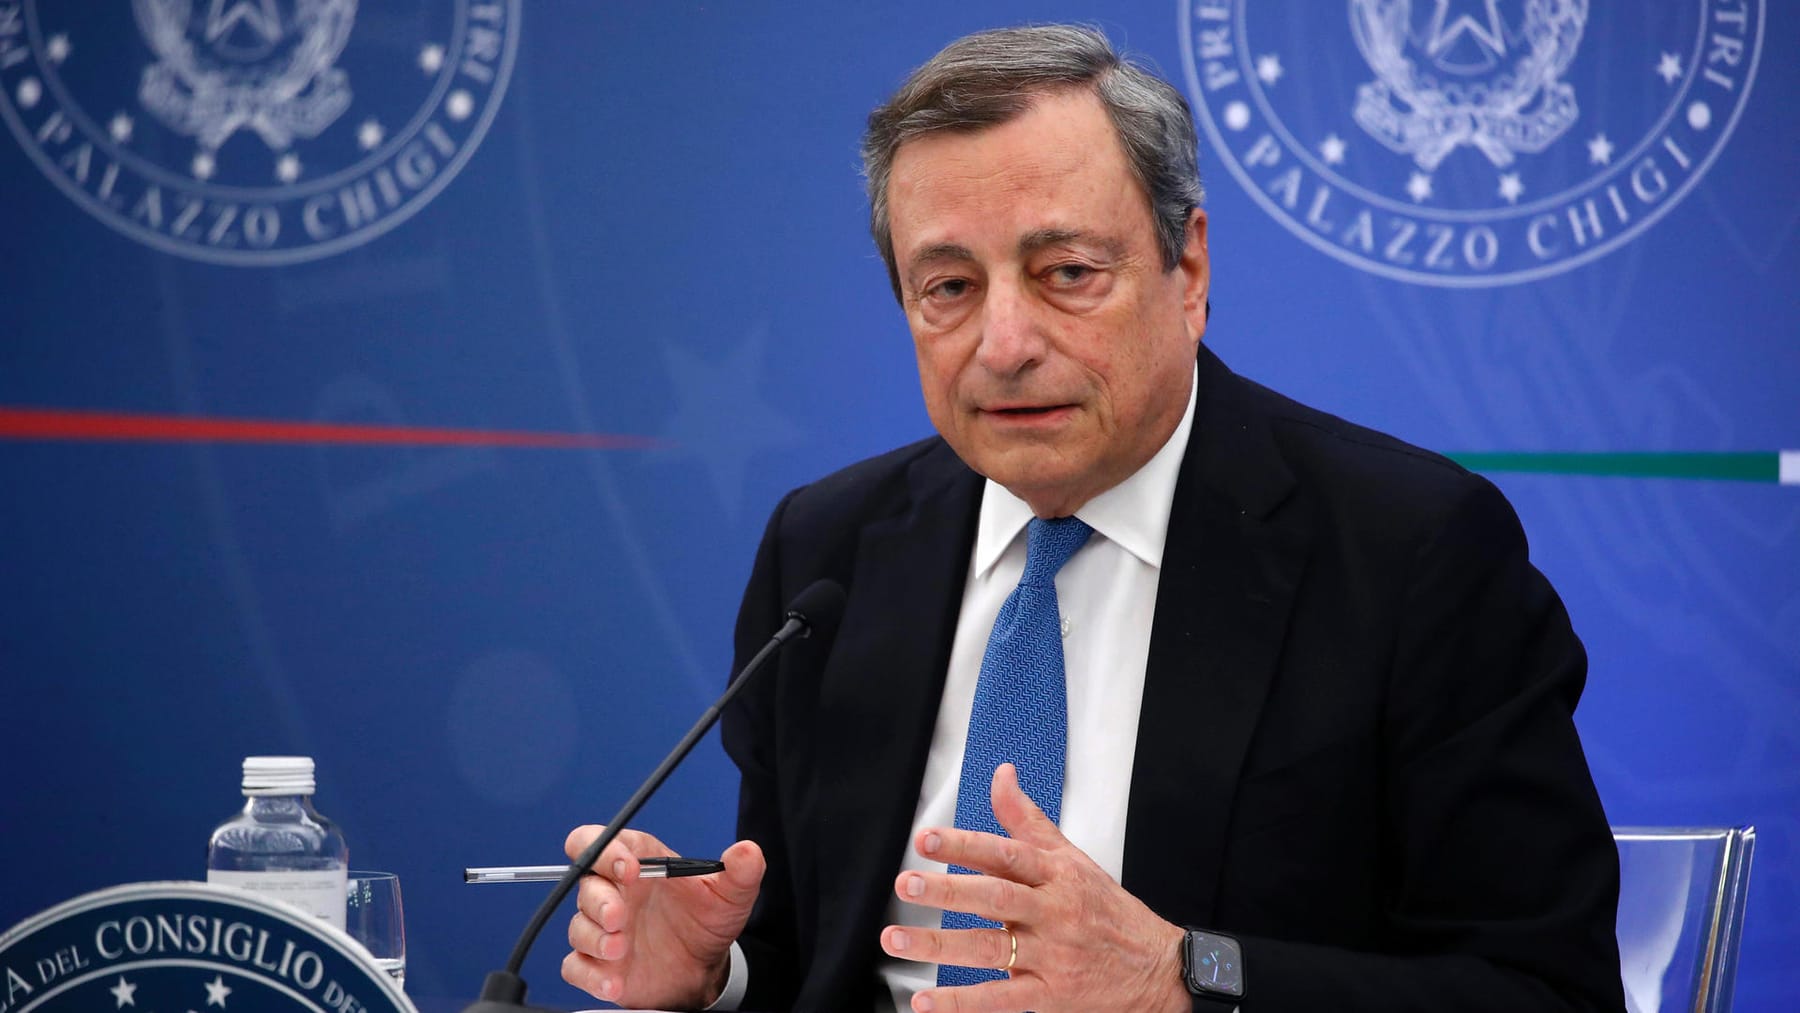 Il gabinetto di Draghi prima del crollo: cinque stelle boicottano il voto di fiducia